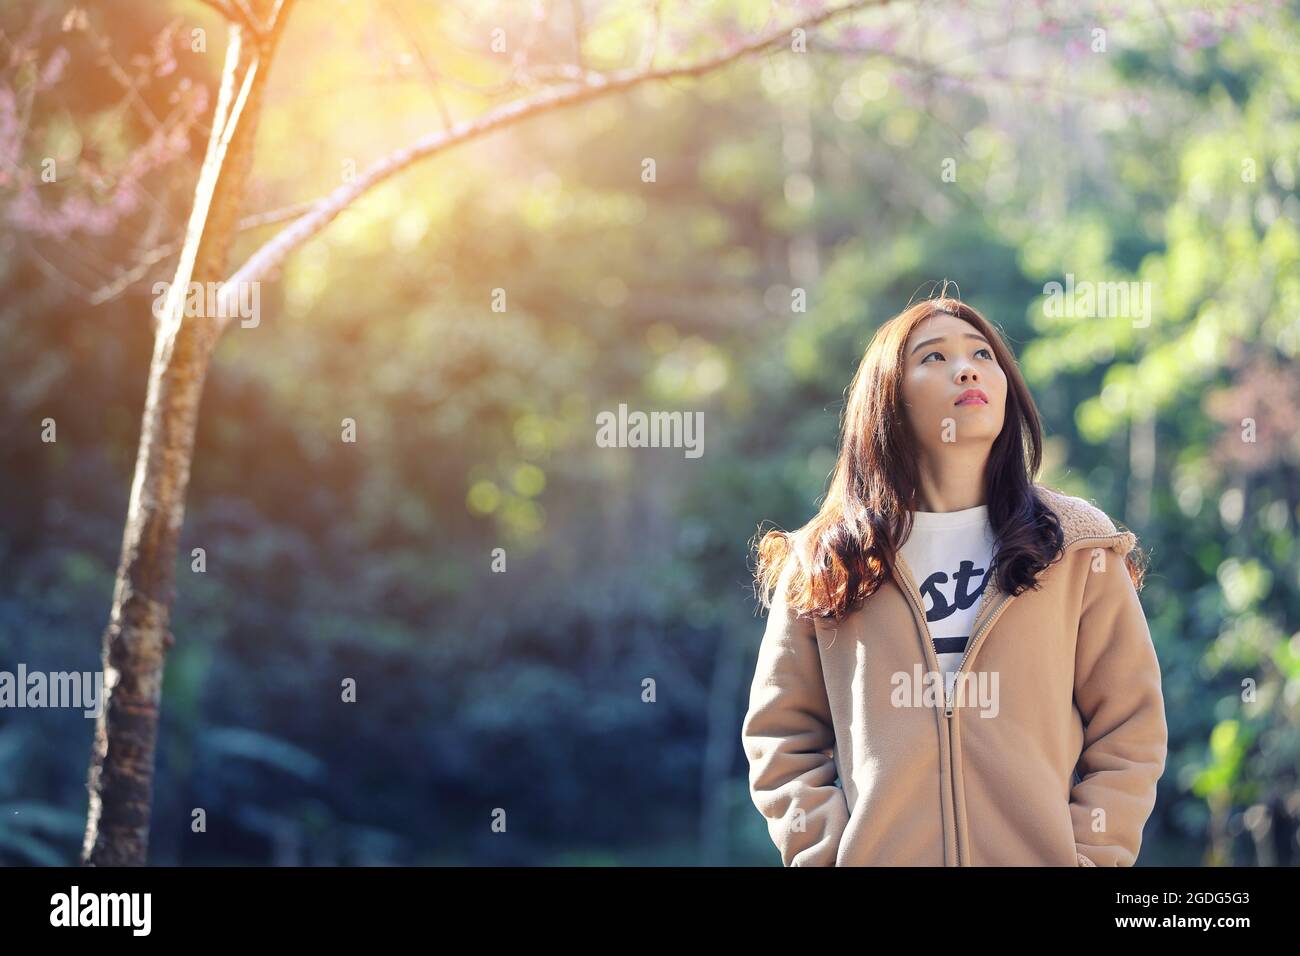 Asiatische Frau mit Kirschblüte Natur Hintergrund Stockfoto